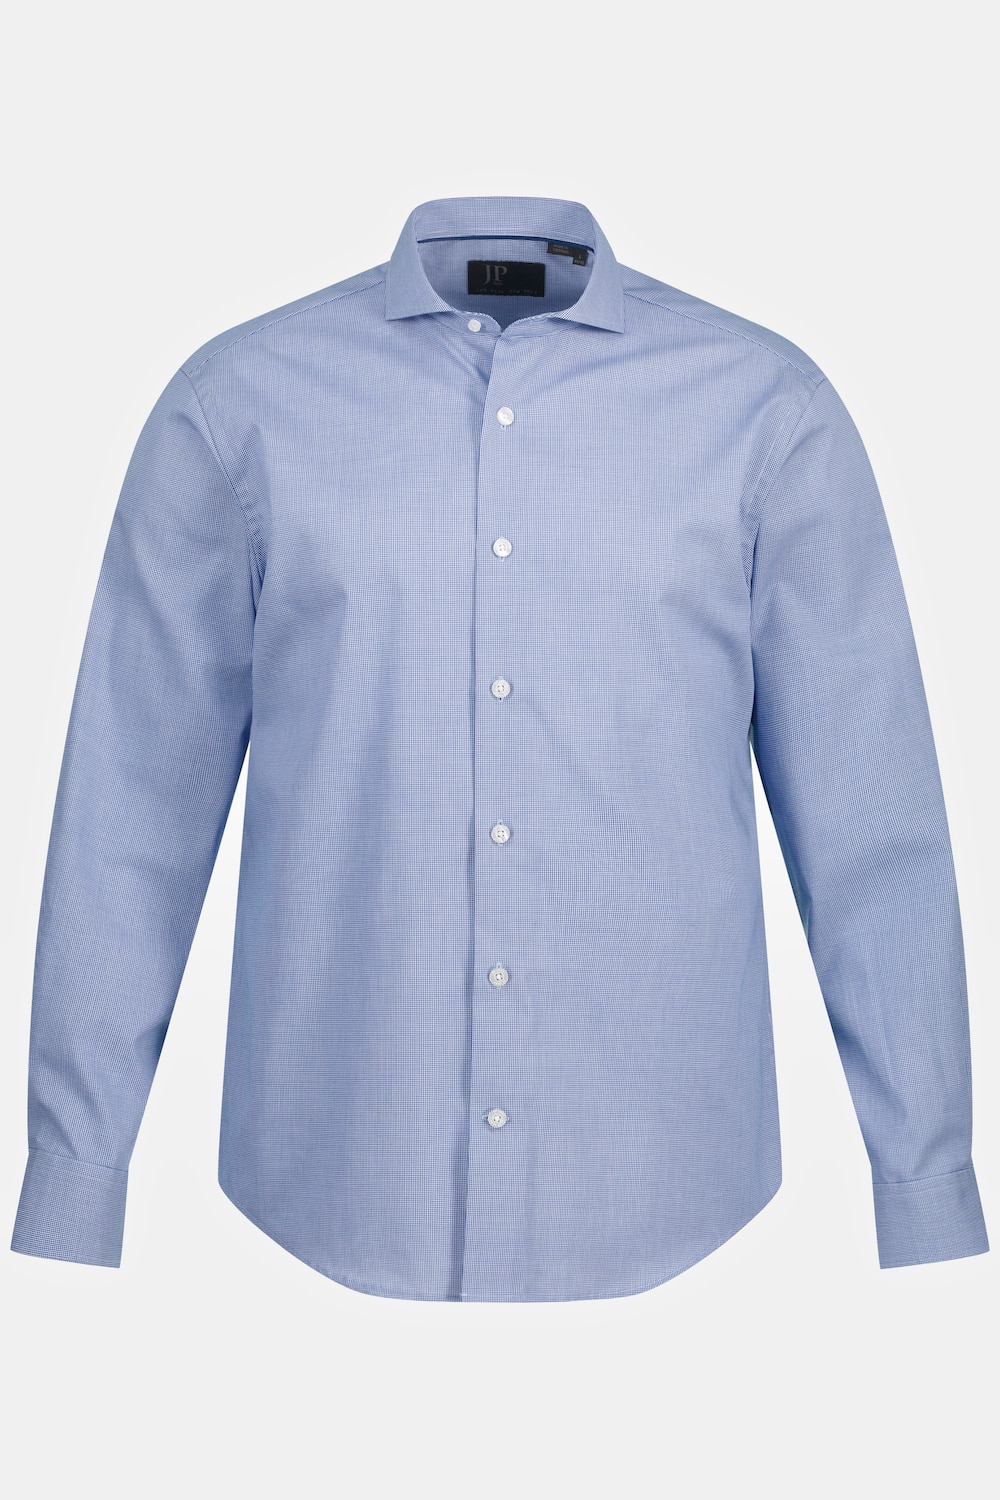 Grote Maten Overhemd, Heren, blauw, Maat: 6XL, Katoen, JP1880